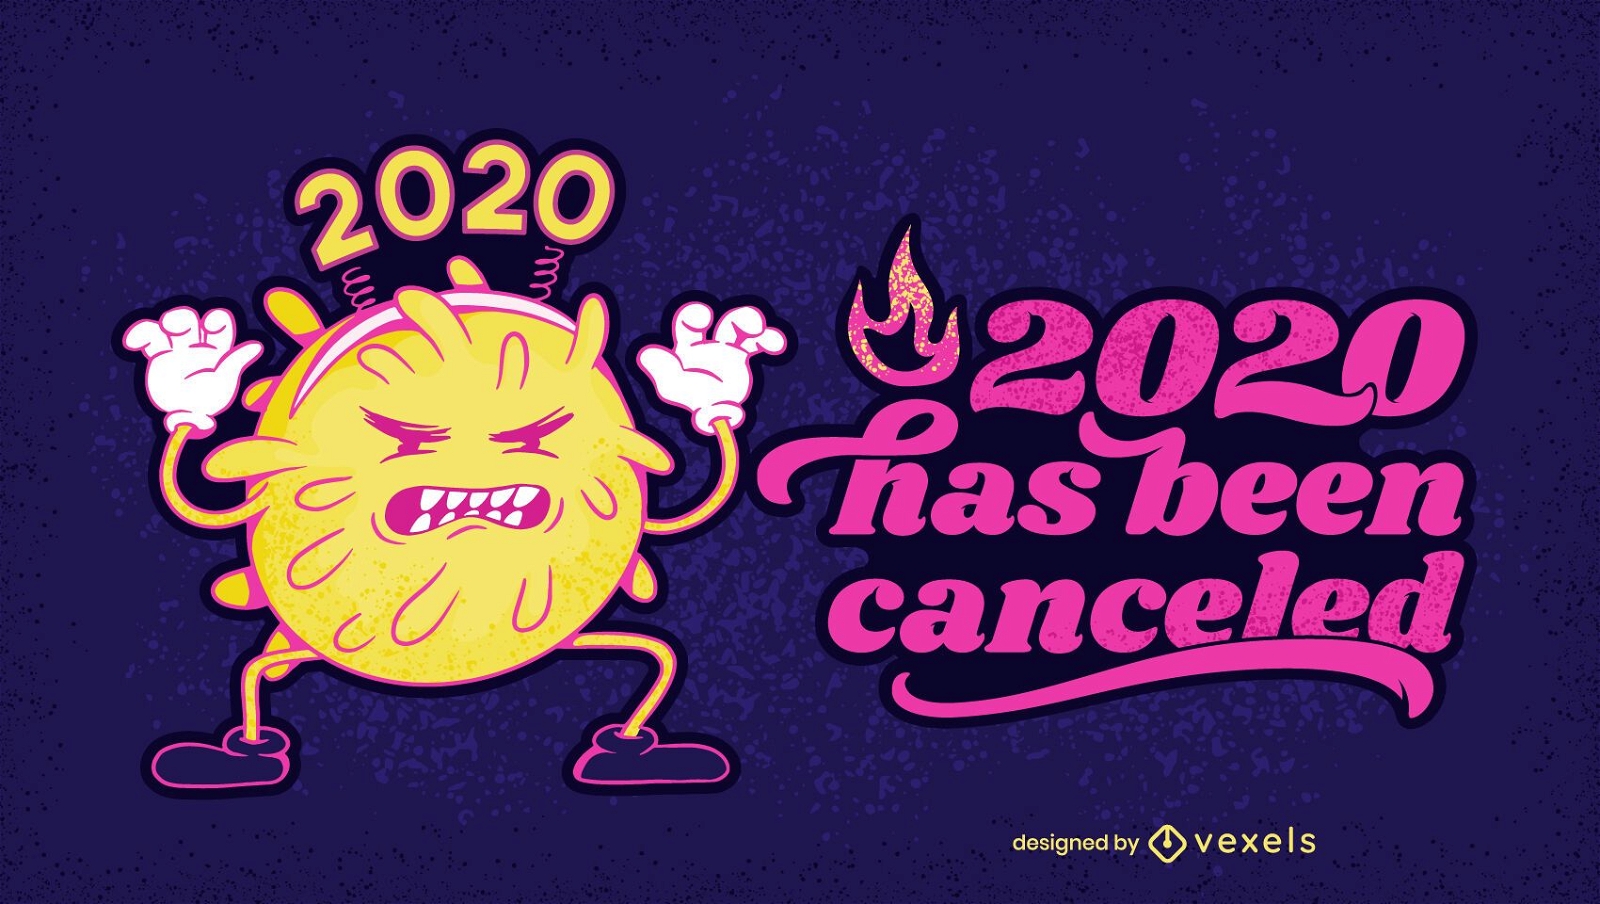 2020 canceled illustration design